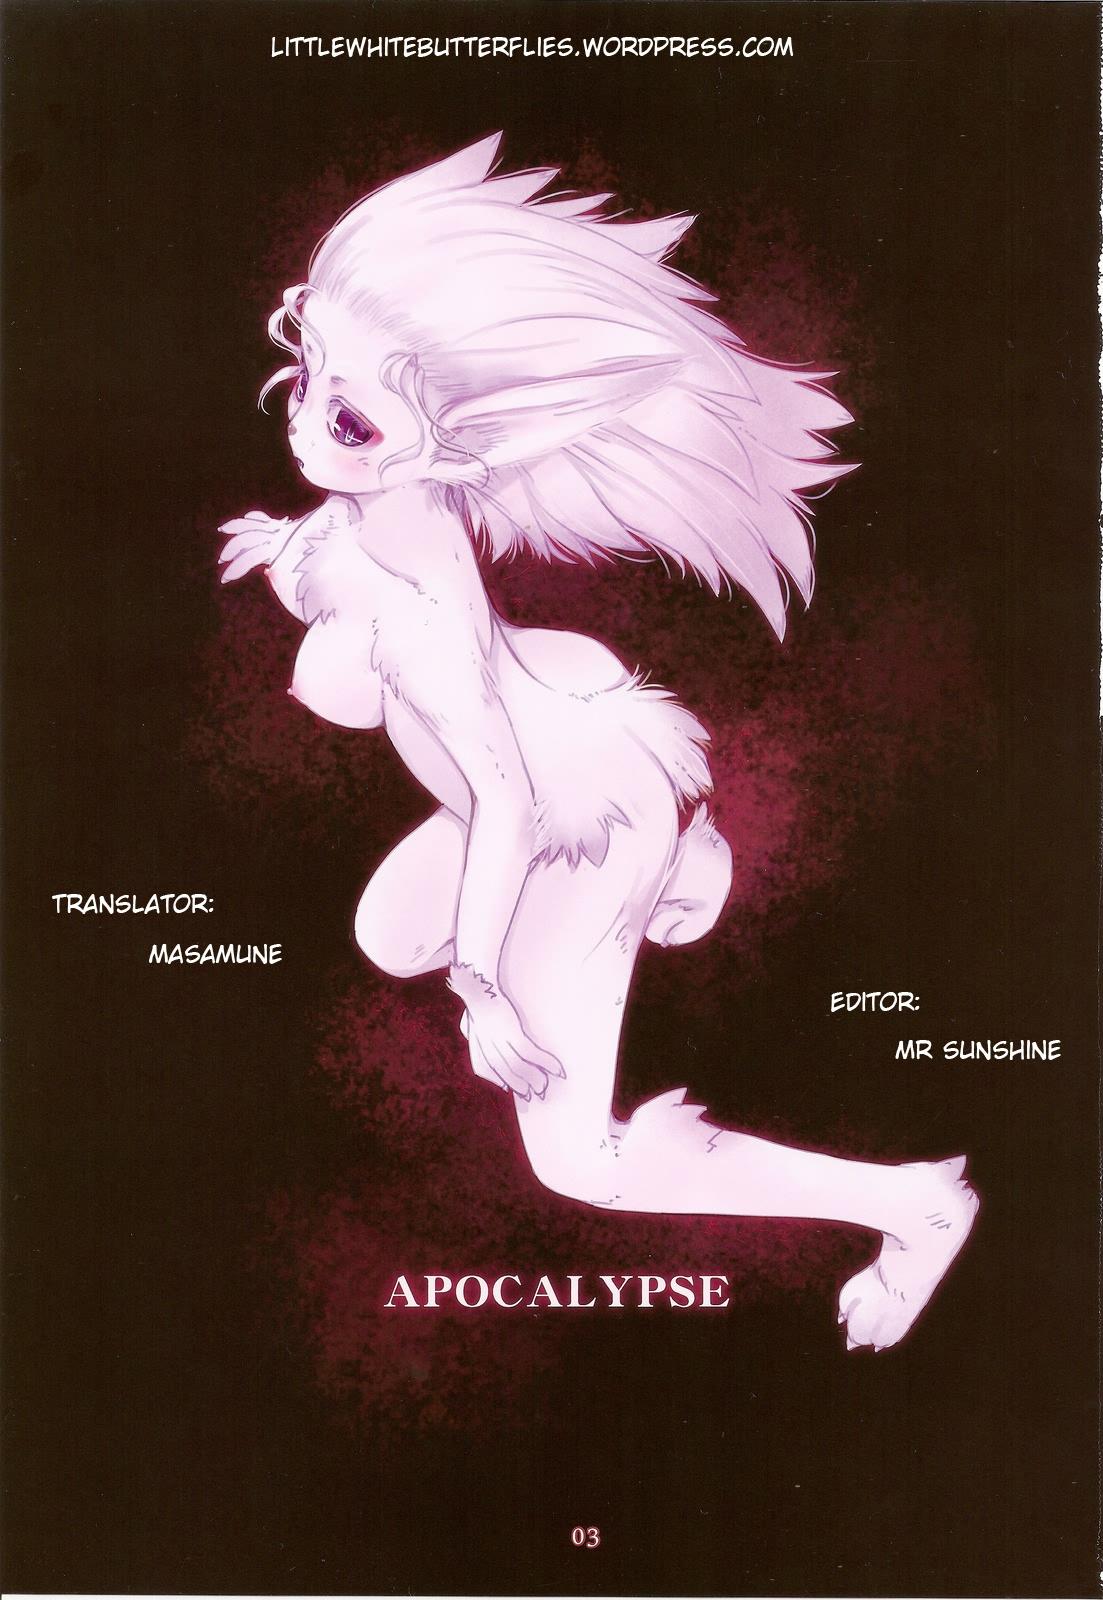 Alternative APOCALYPSE - Seiken densetsu 3 Xenogears Final fantasy Final fantasy vi Exhibitionist - Page 3